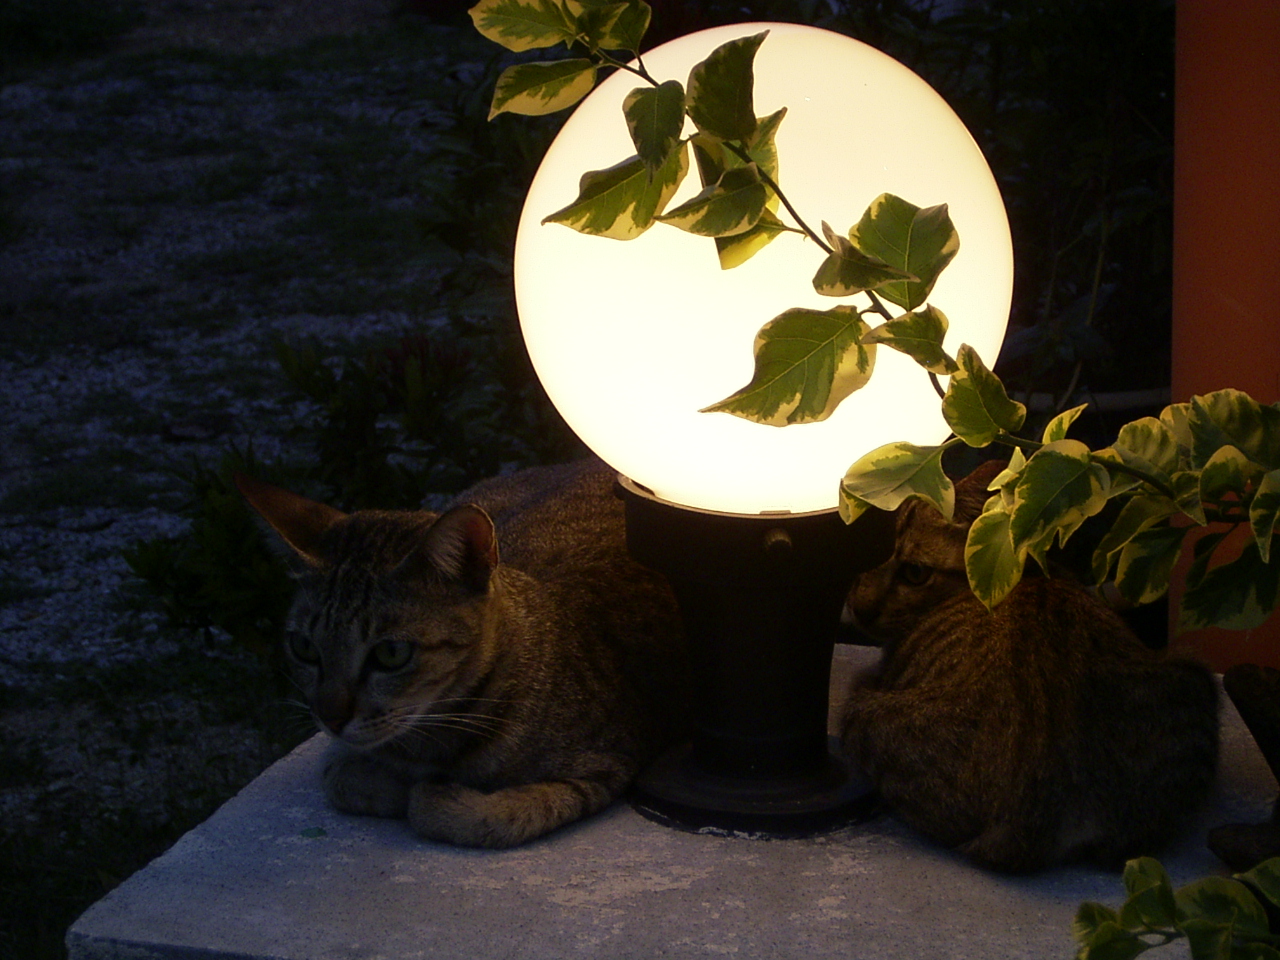 Cat in the light